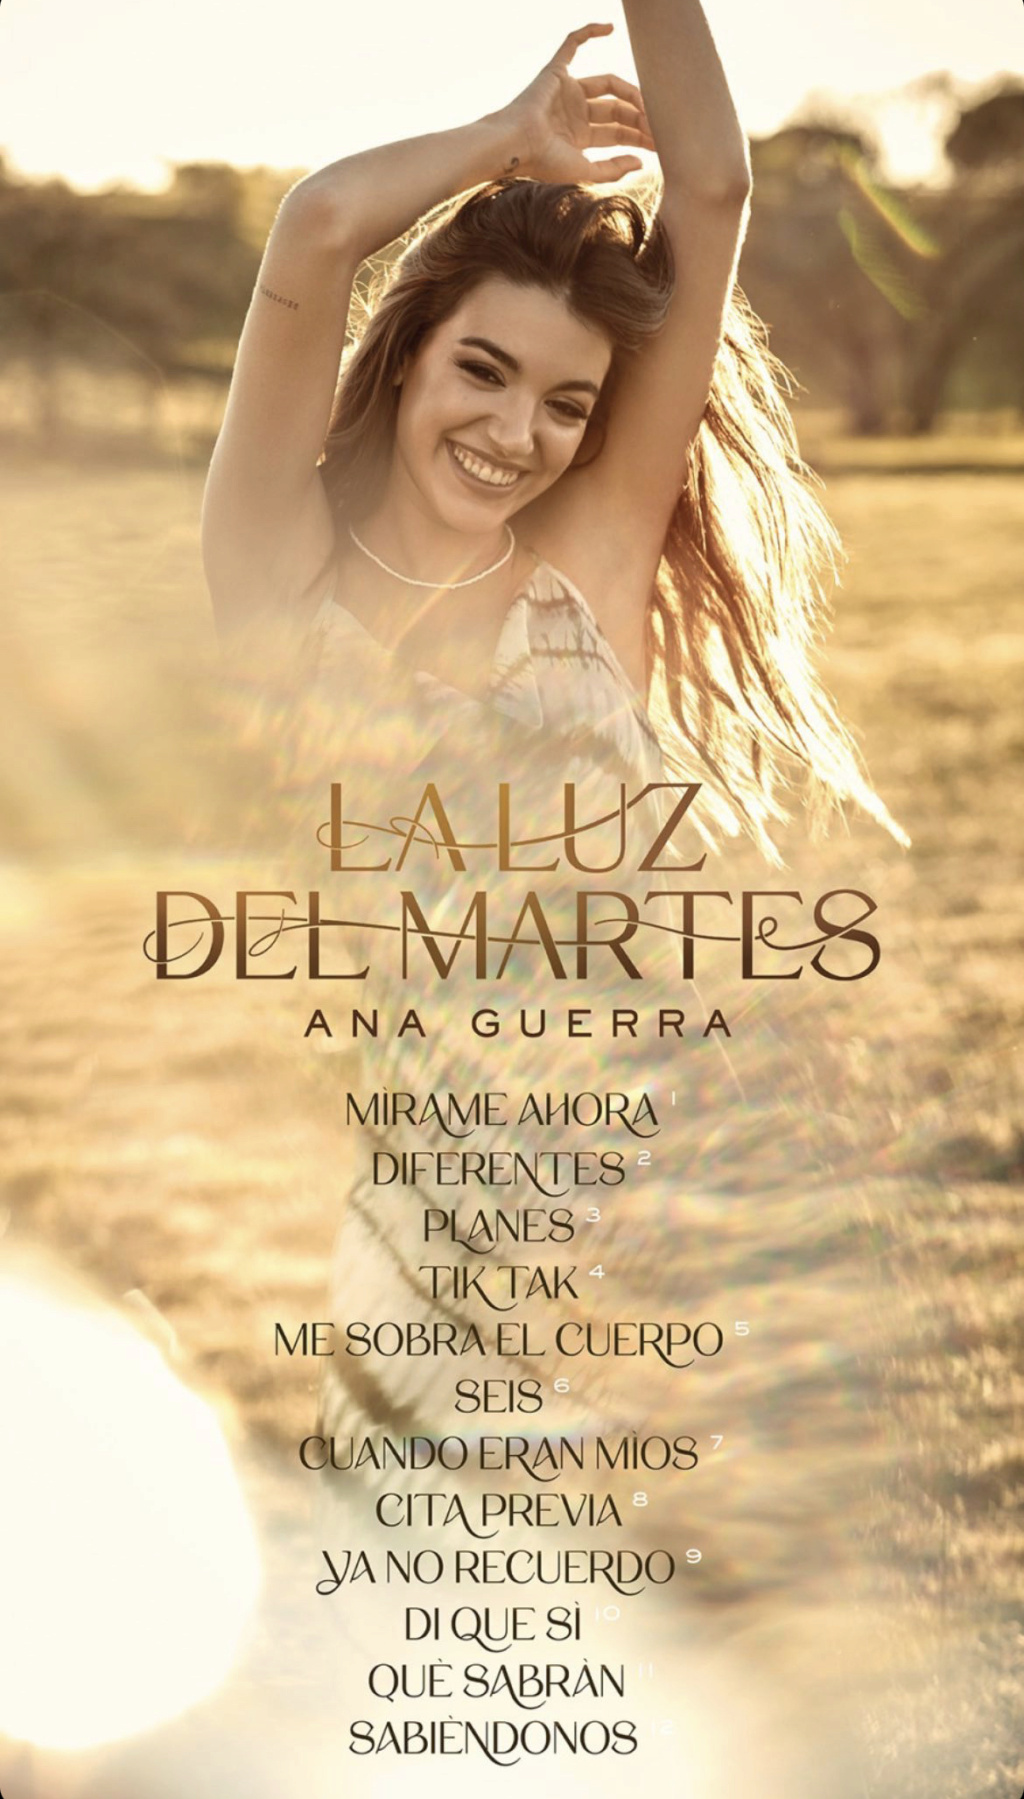 Ana Guerra >> single "Tiempo de Descuento" - Página 3 4a7bb910